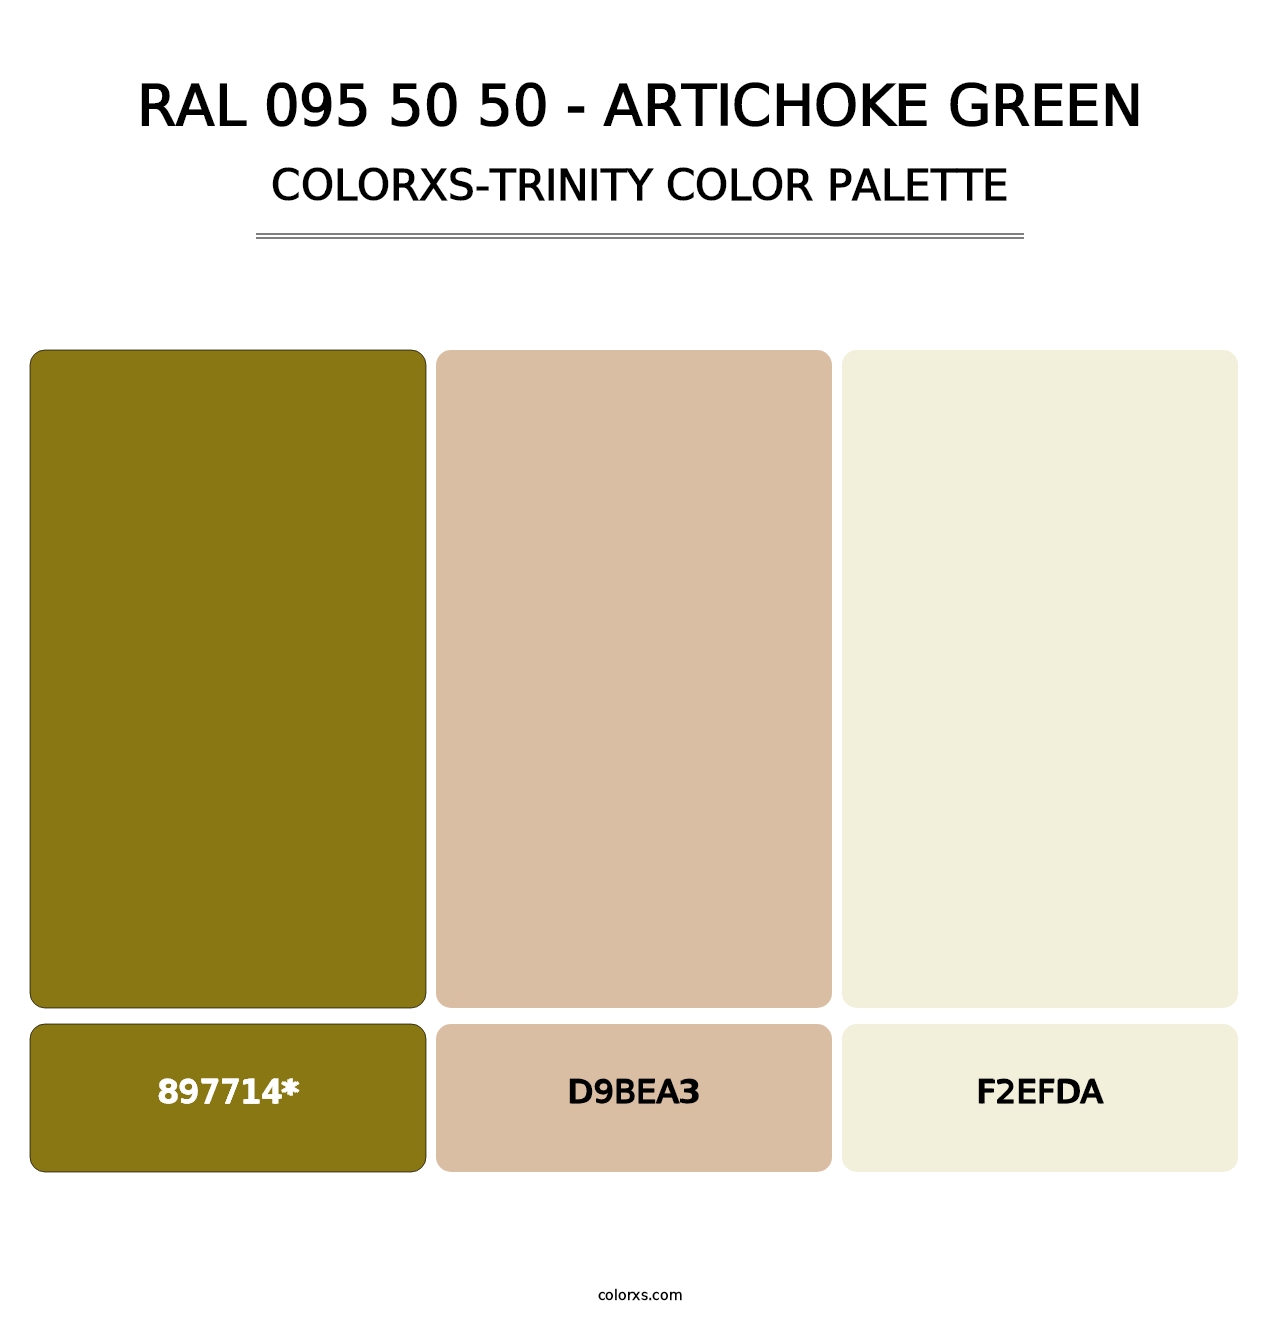 RAL 095 50 50 - Artichoke Green - Colorxs Trinity Palette